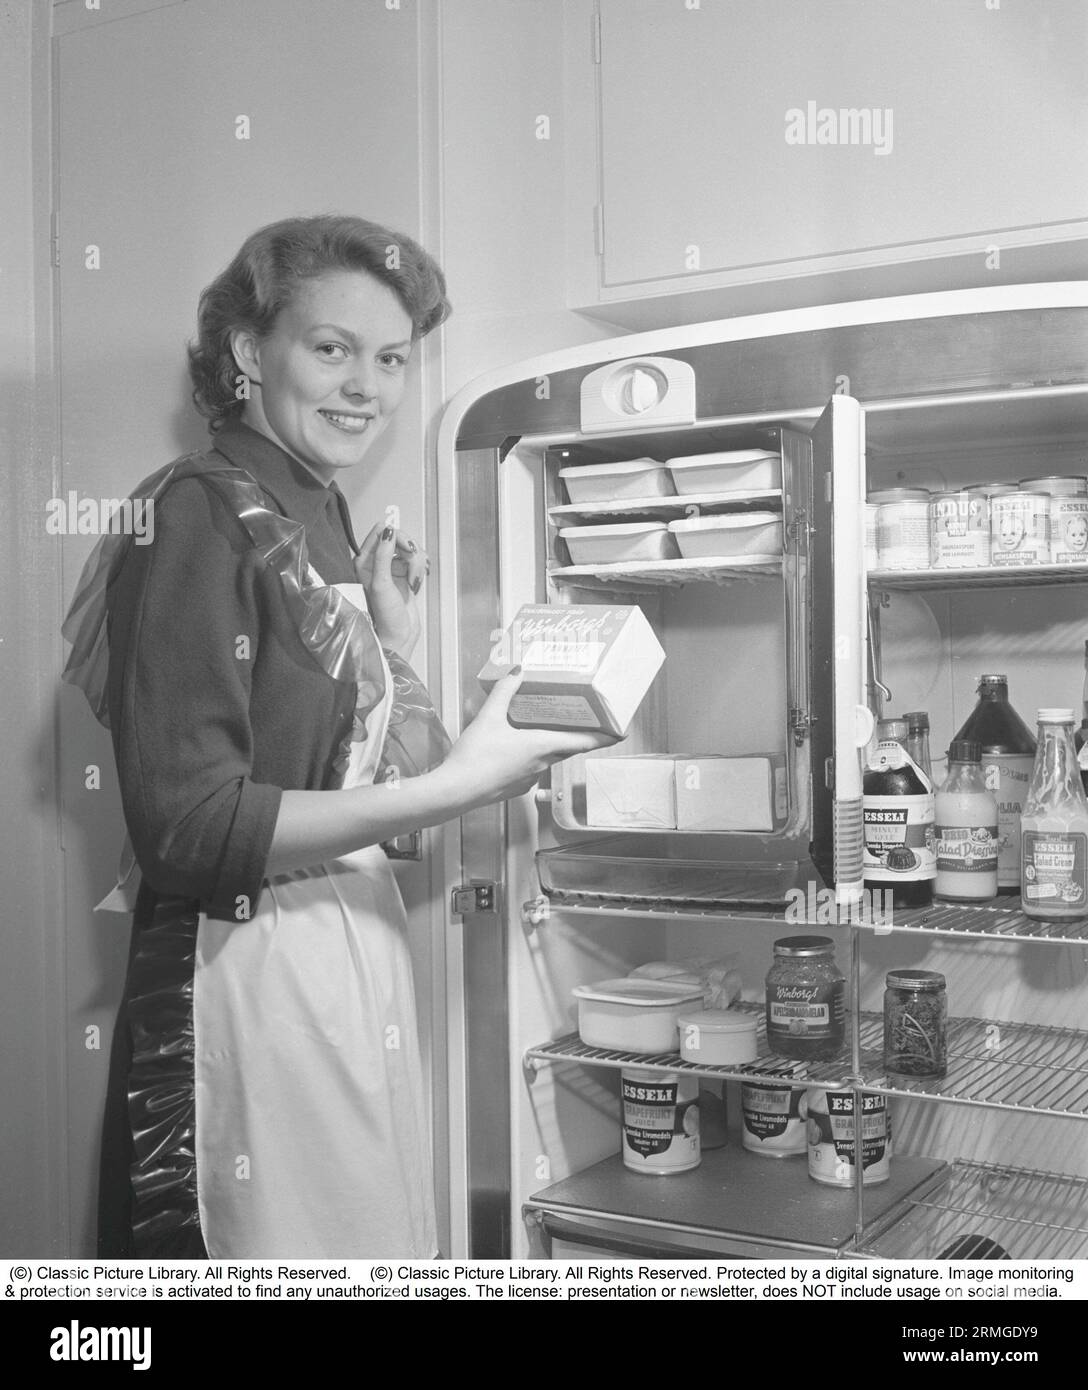 Dans la cuisine 1950s. Intérieur d'une cuisine et une jeune femme debout au réfrigérateur Leonard avec sa porte ouverte, montrant les boîtes et les bouteilles de différents aliments debout sur les étagères. Une armoire de congélation séparée est intégrée dans le réfrigérateur, une fonctionnalité assez nouvelle à ce moment. Elle porte un tablier en plastique. Elle est Haide Göransson, 1928-2008, mannequin et actrice. Suède 1950 Kristoffersson ref AU23-2 Banque D'Images